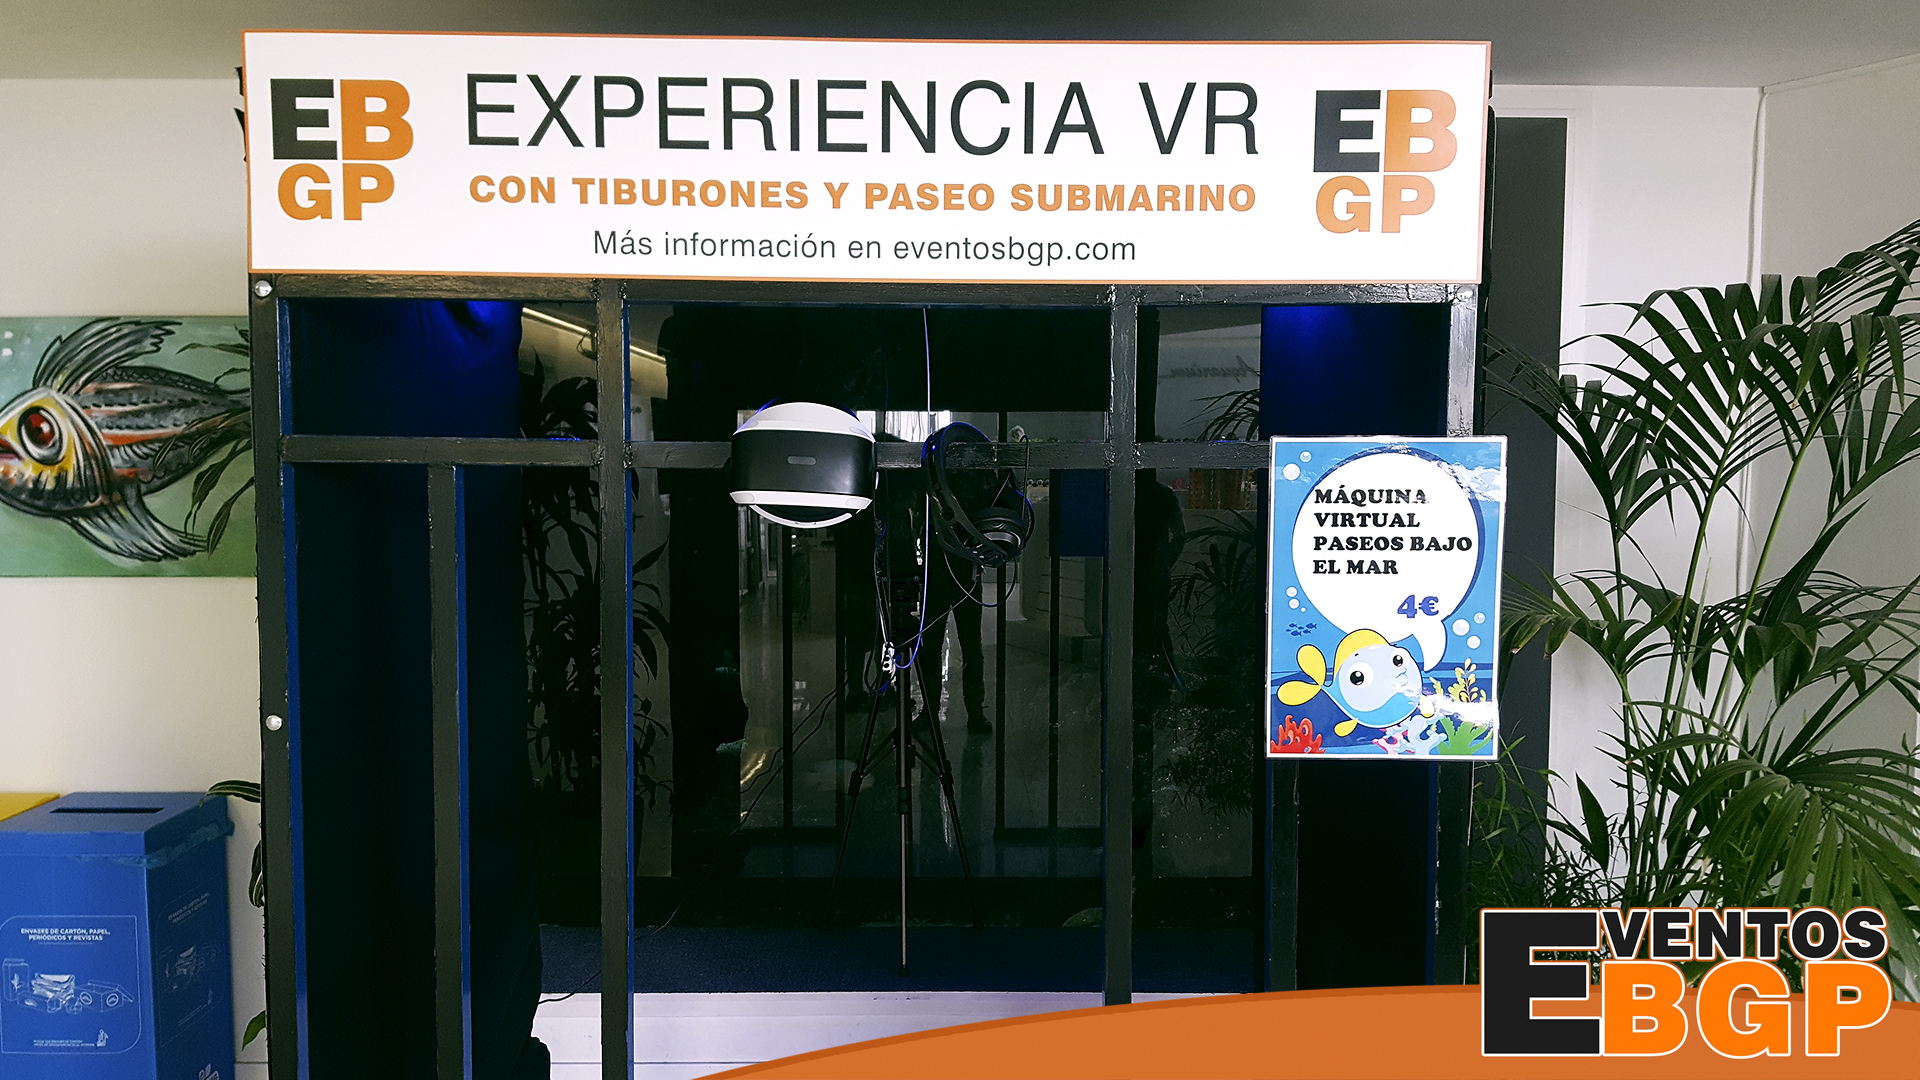 Experiencia VR Acuario de Zaragoza con jaula